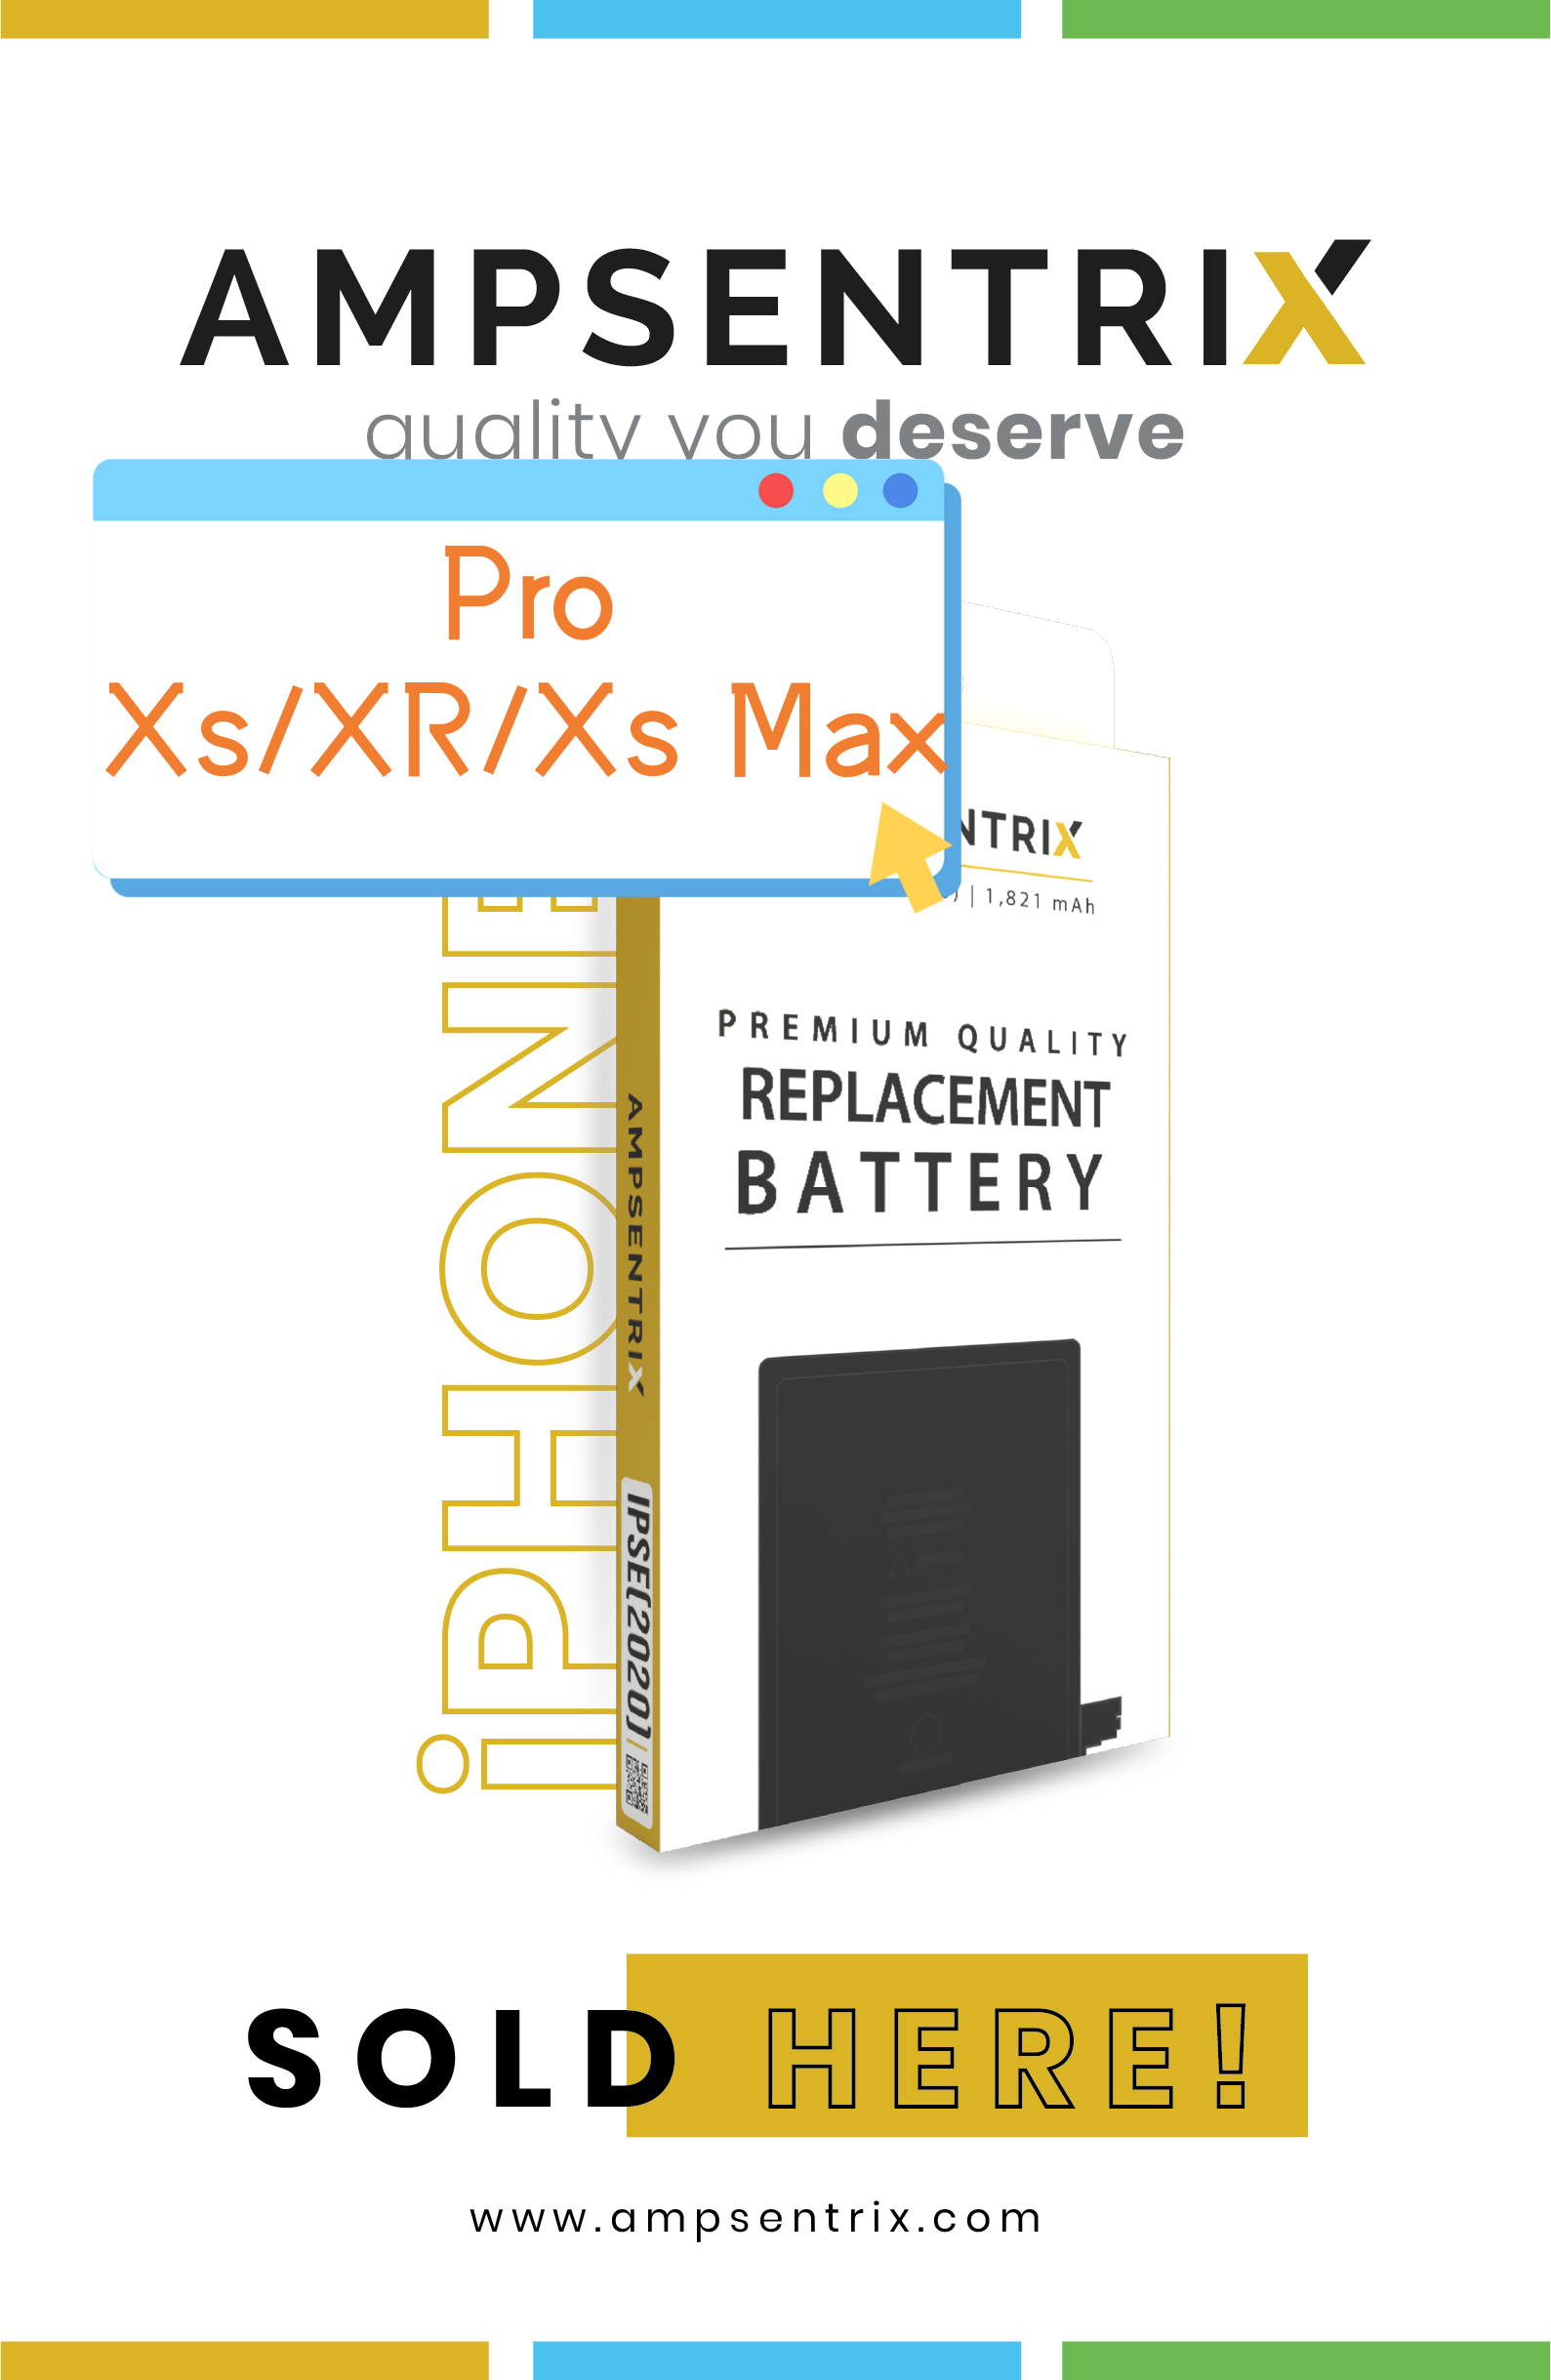 Baterías de repuesto Ampsentrix Pro para Apple iPhone Xs / XR / Xs Max